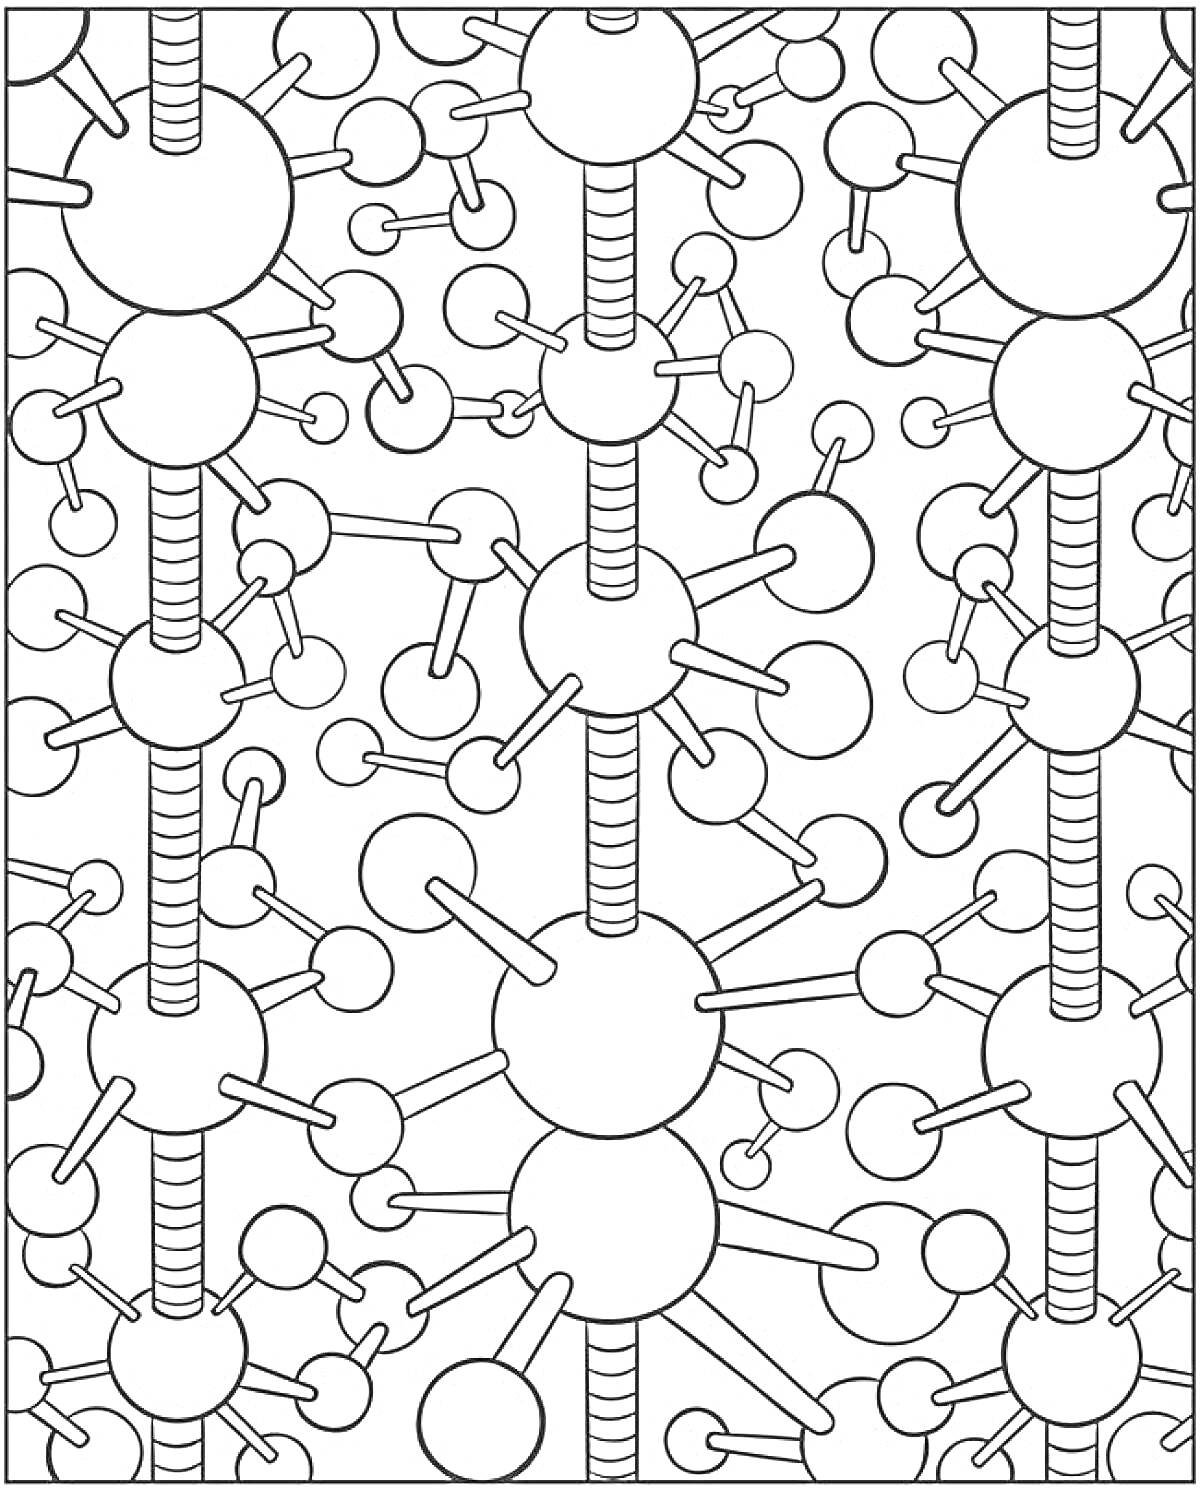 Молекулярные узоры с большими и маленькими кругами, соединенными линиями